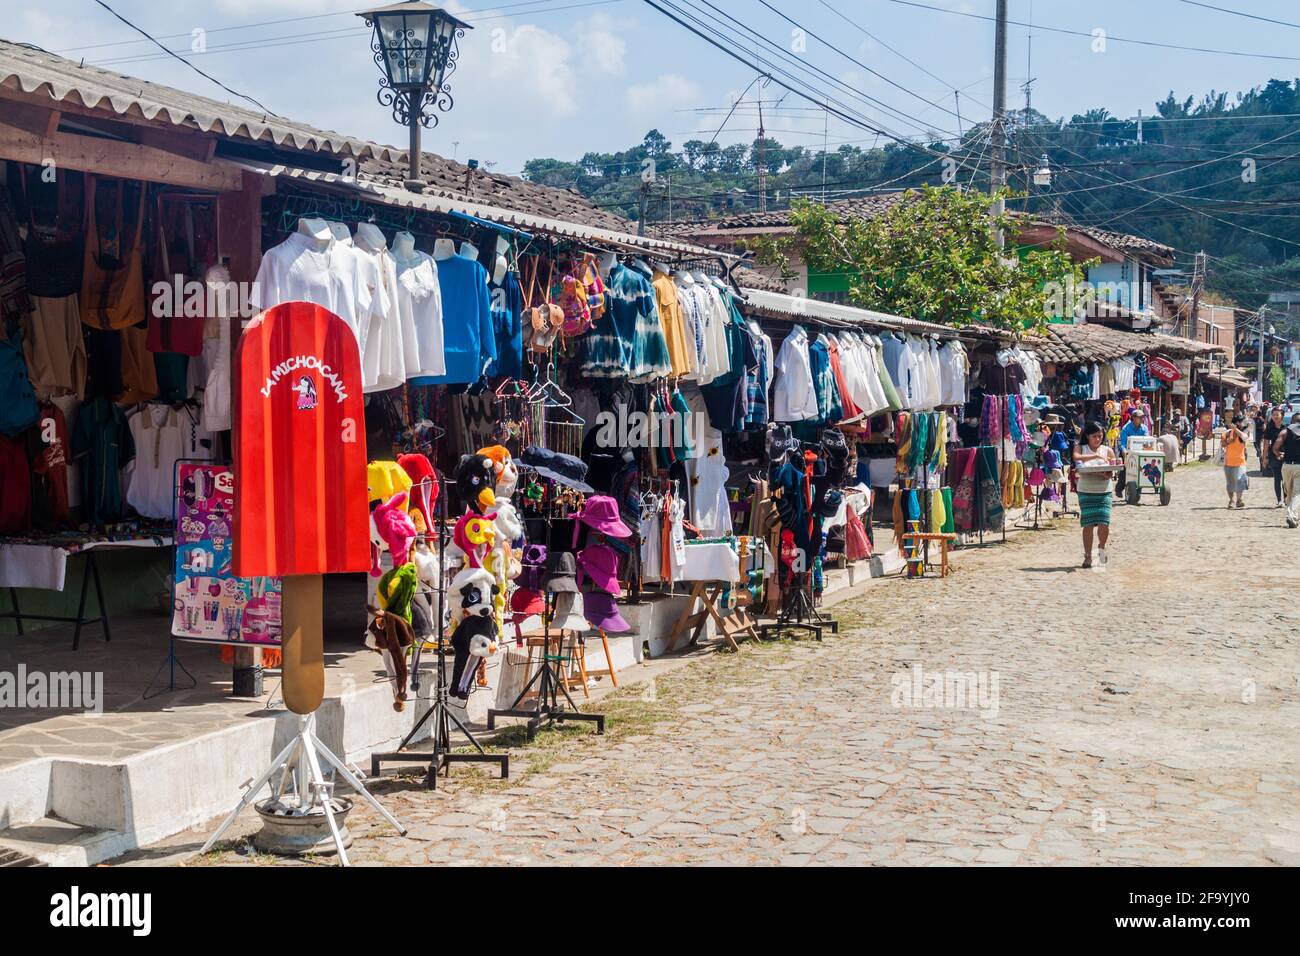 CONCEPCION DE ATACO, EL SALVADOR - 3 AVRIL 2016 : des étals de vêtements bordent les rues du village de Concepcion de Ataco. Banque D'Images